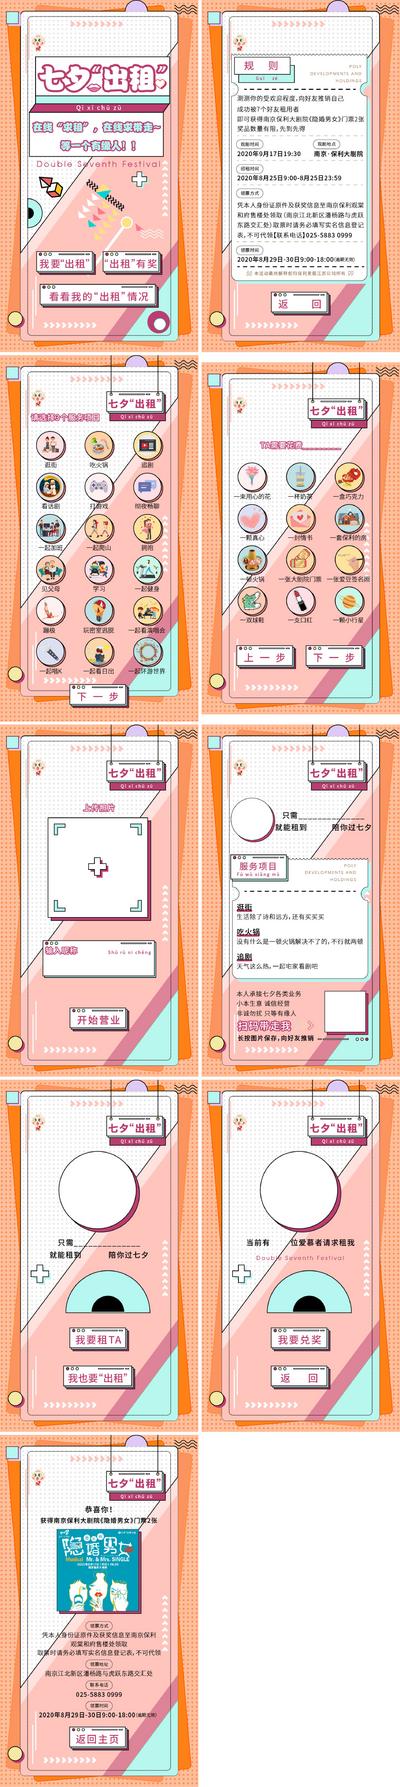 南门网 专题设计 七夕 情人节 出租 小游戏 H5 互动 规则 活动